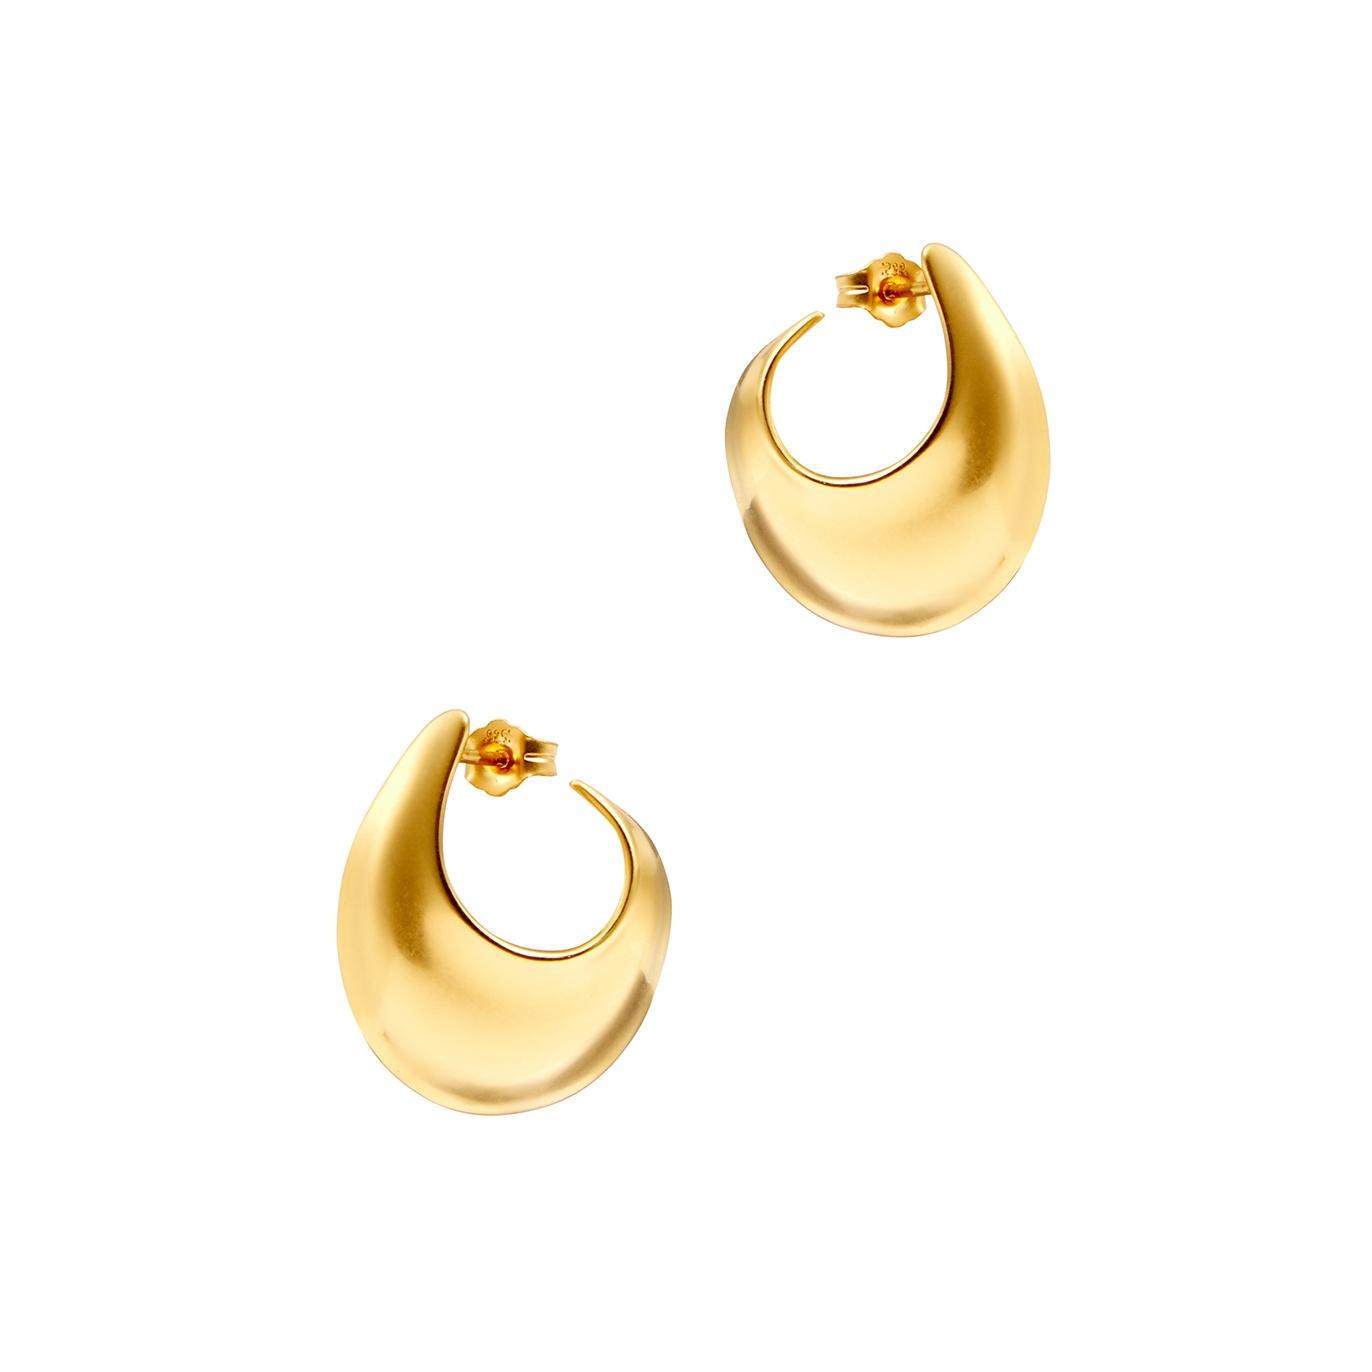 By Pariah The Sabine 14kt Gold Vermeil Hoop Earrings